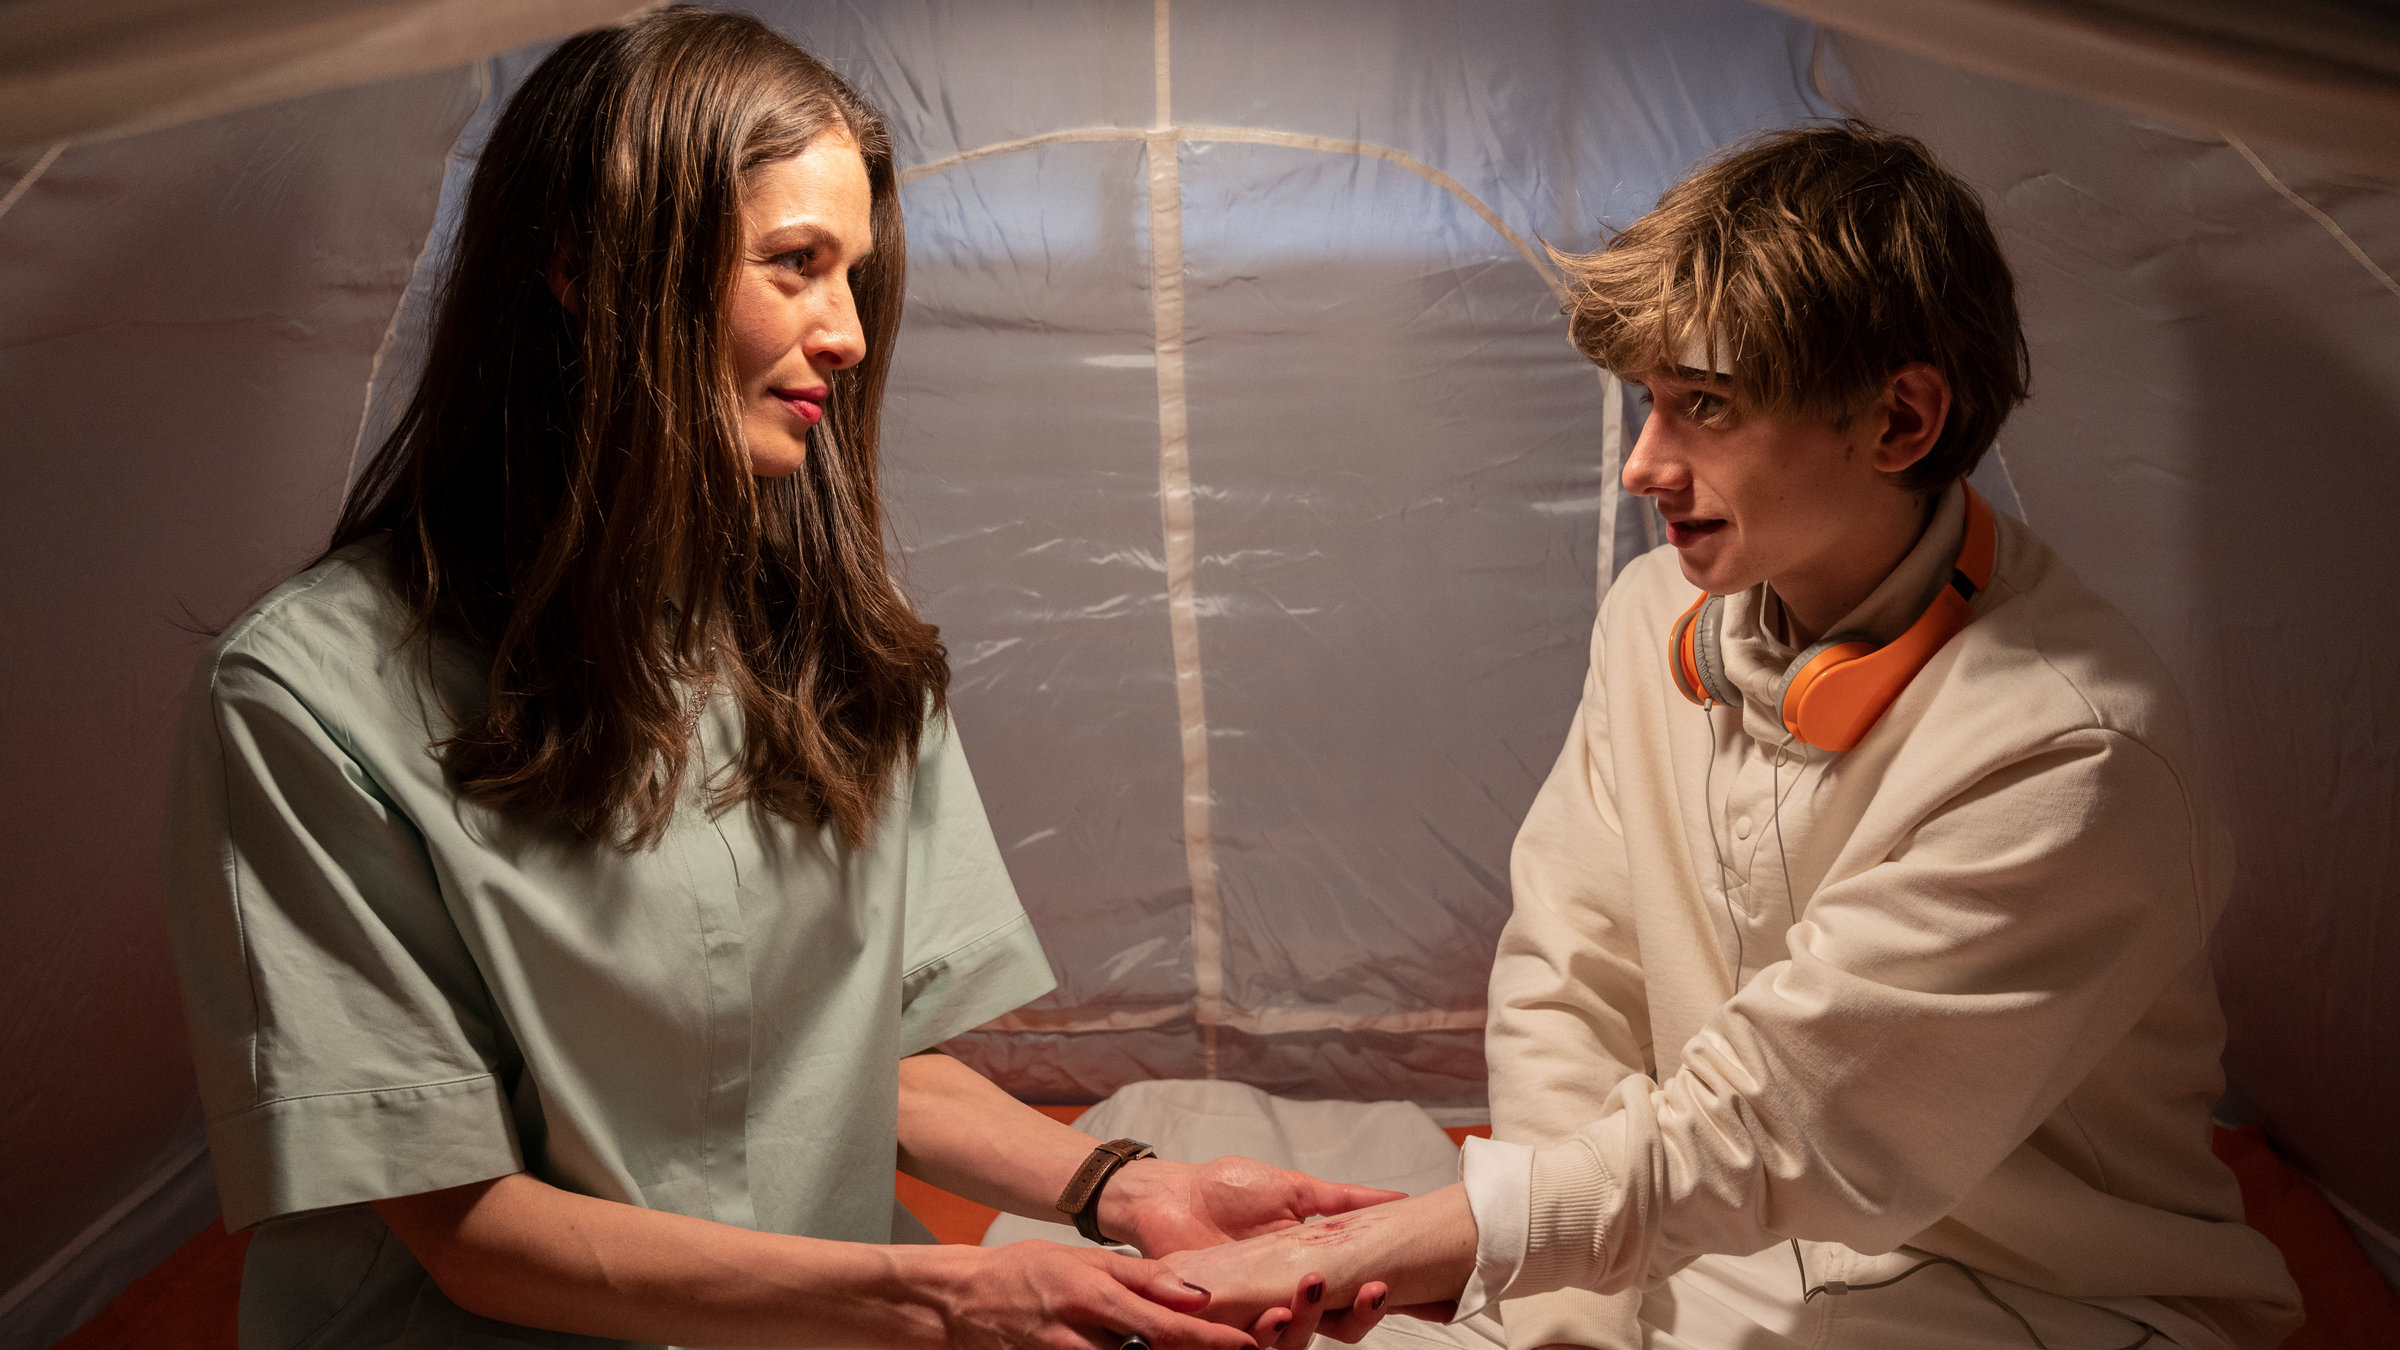 "SOKO Stuttgart – Bling Bling": Rebecca (Anna Puck) und Vincent Fiori (Johannes Geller) sitzen in einem weißen Zelt. Rebecca hält fürsorglich Vincents Hand, an der eine Verletzung zu sehen ist. Die beiden lächeln sich liebevoll an.